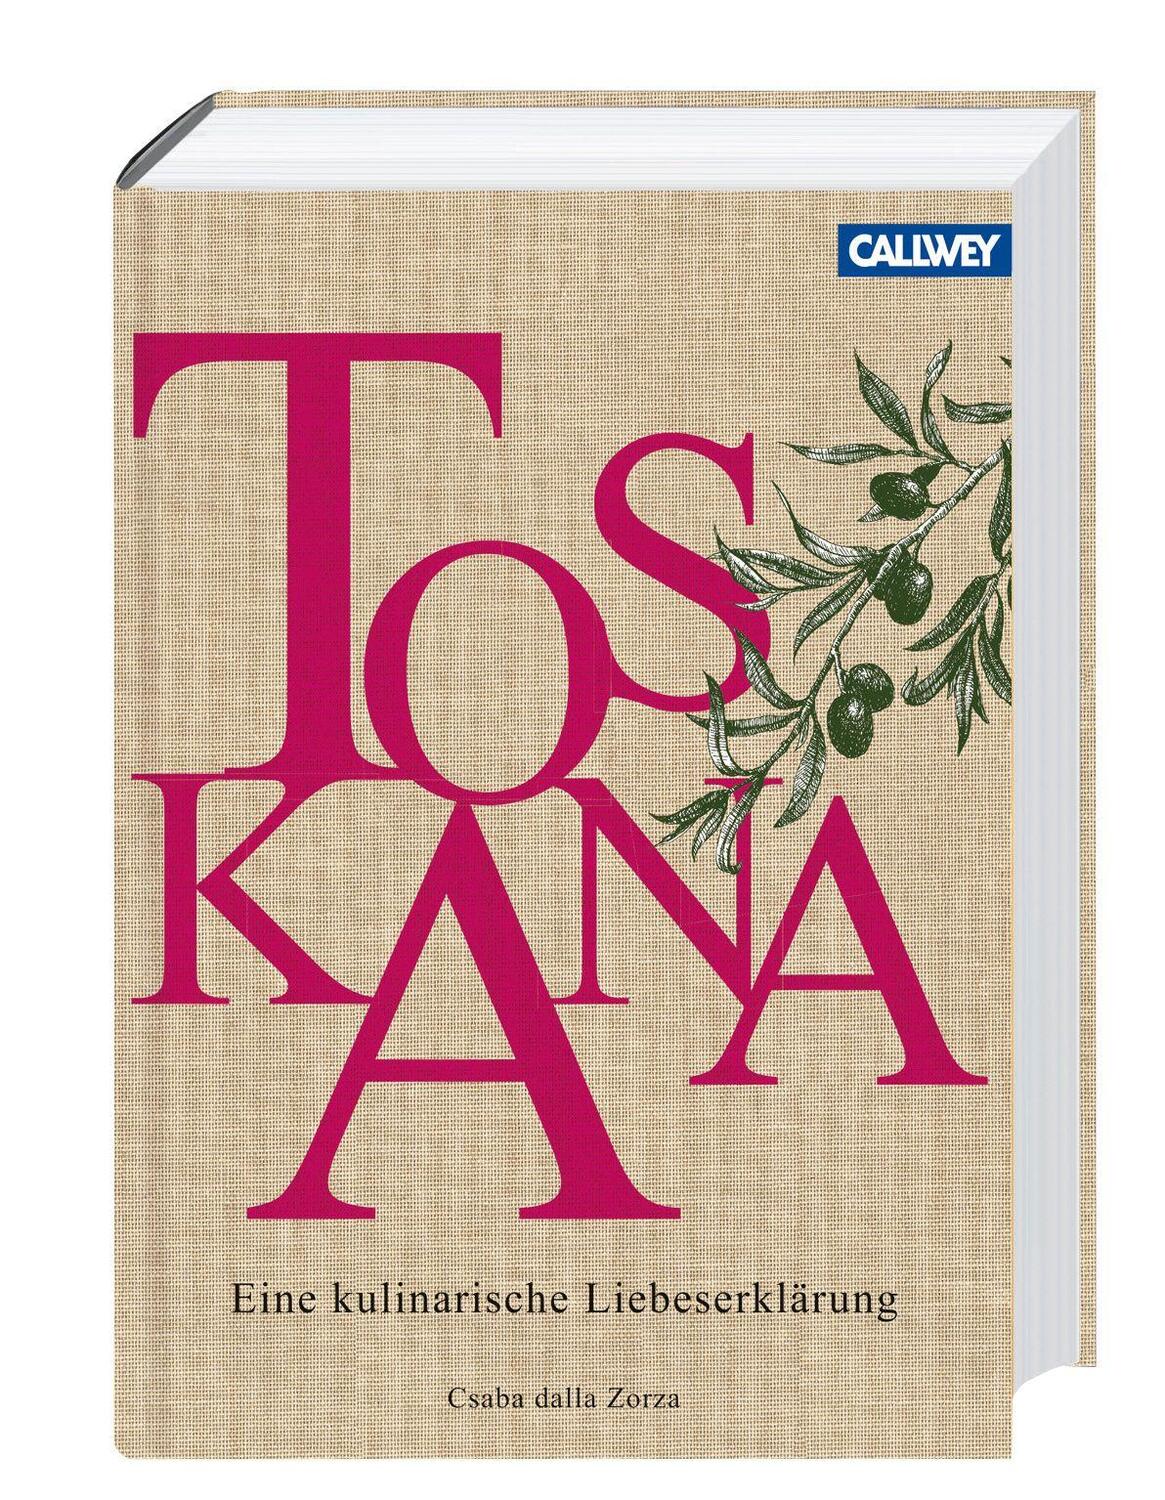 Toskana - Zorza, Csaba dalla